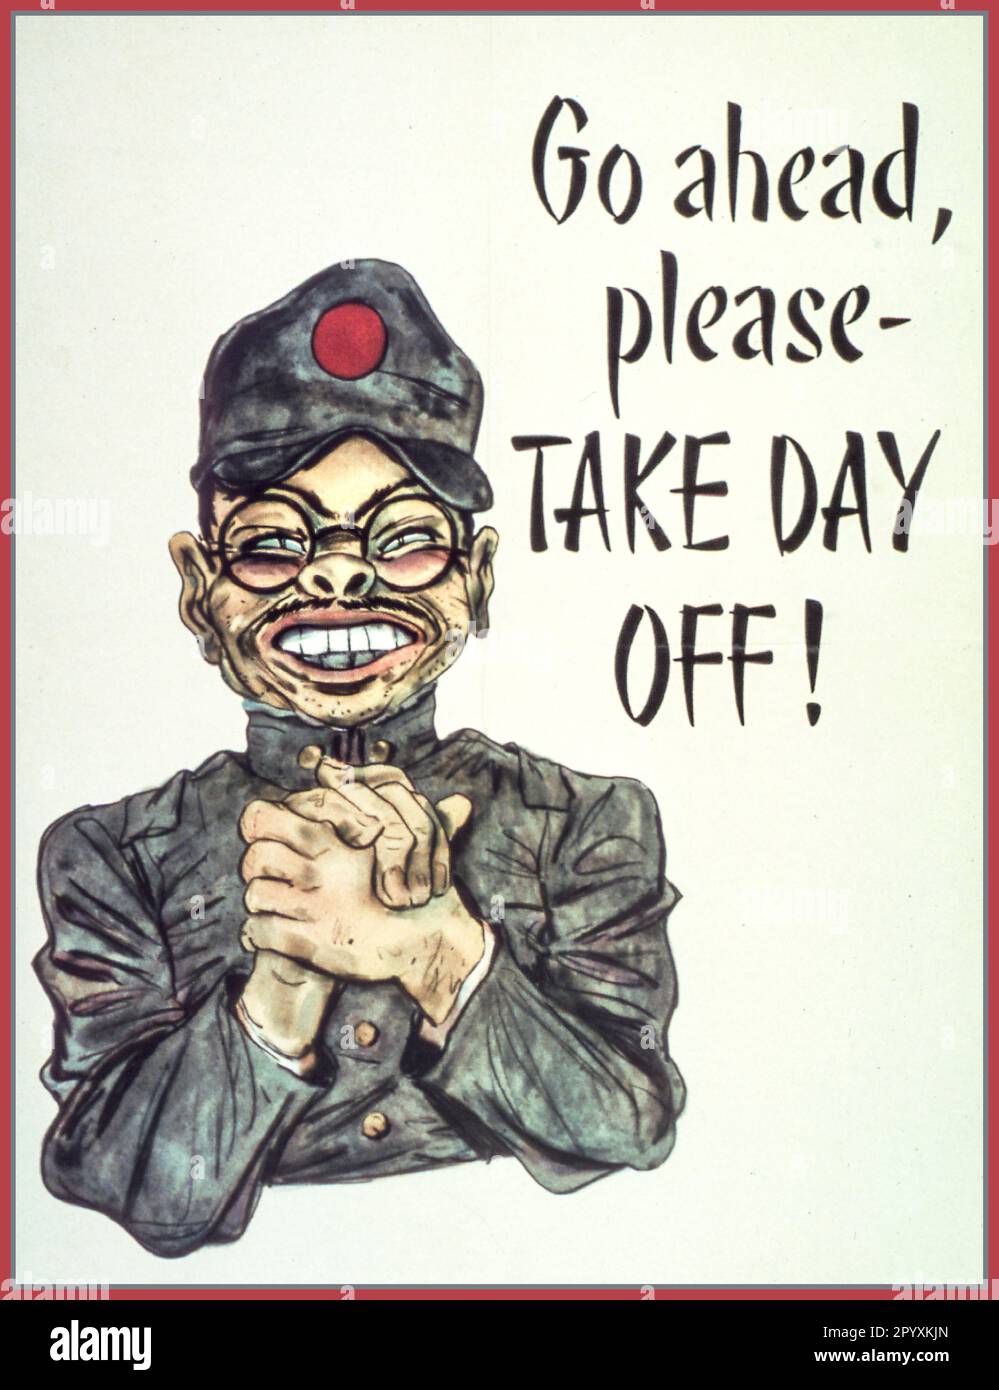 WW2 amerikanisches Propagandaposter für die Produktion von Kriegsarbeit. Mit einem japanischen Stereotyp mit Karikatur und gefalteten Händen, die Kriegsmitarbeiter anflehen, sich den Tag freizunehmen. 1940er Zweiter Weltkrieg Zweiter Weltkrieg „GEHEN SIE VOR, NEHMEN Sie SICH DEN TAG FREI“ Stockfoto